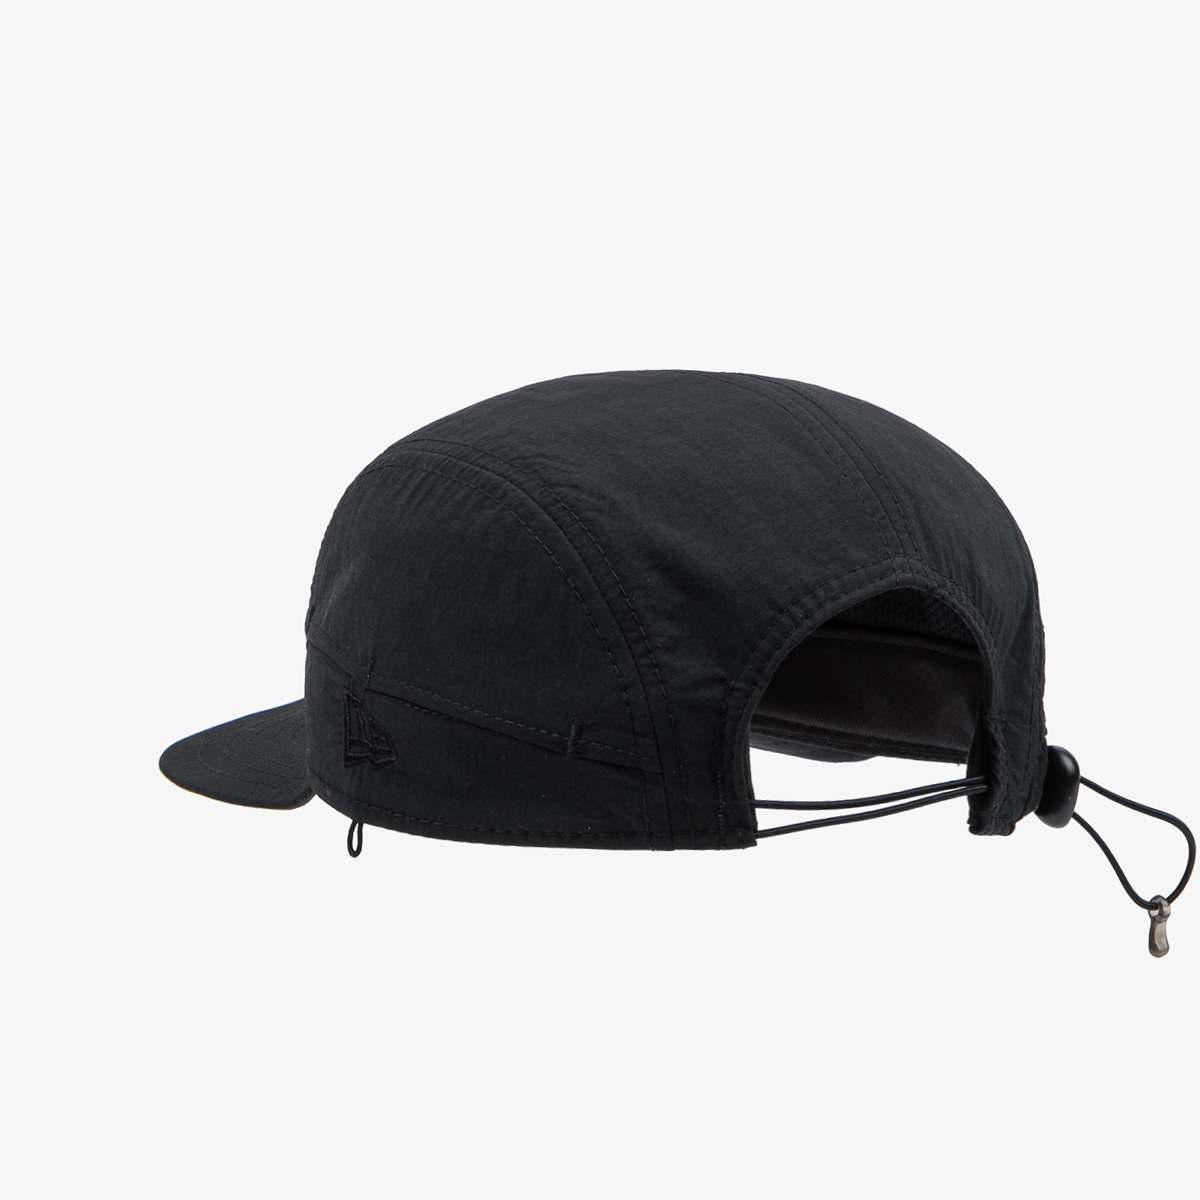 New Era Black Packable Camper Cap